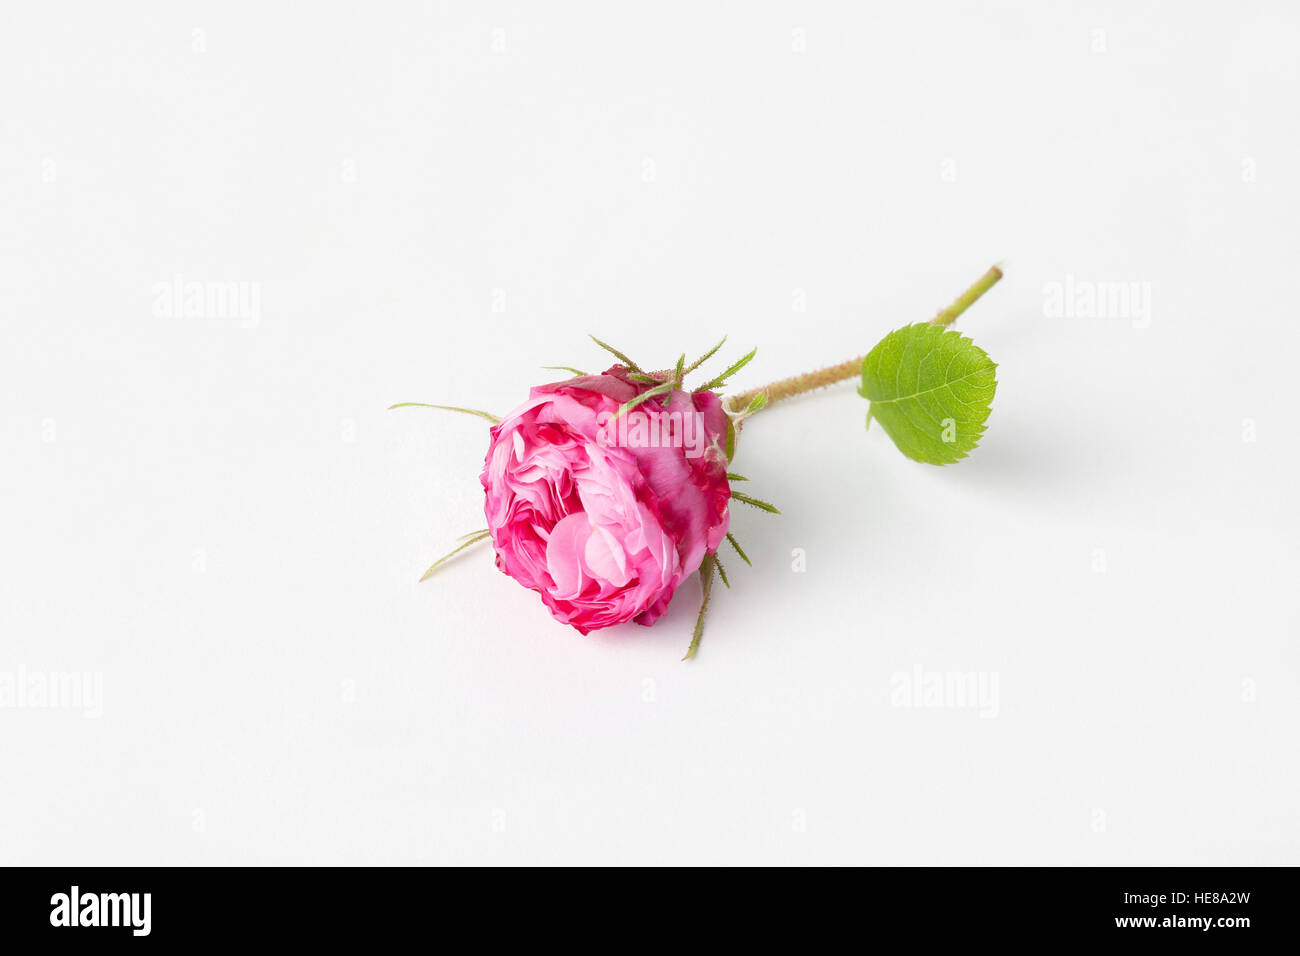 Imagen de fondo de rosa rosa,aislado en blanco. Foto de stock